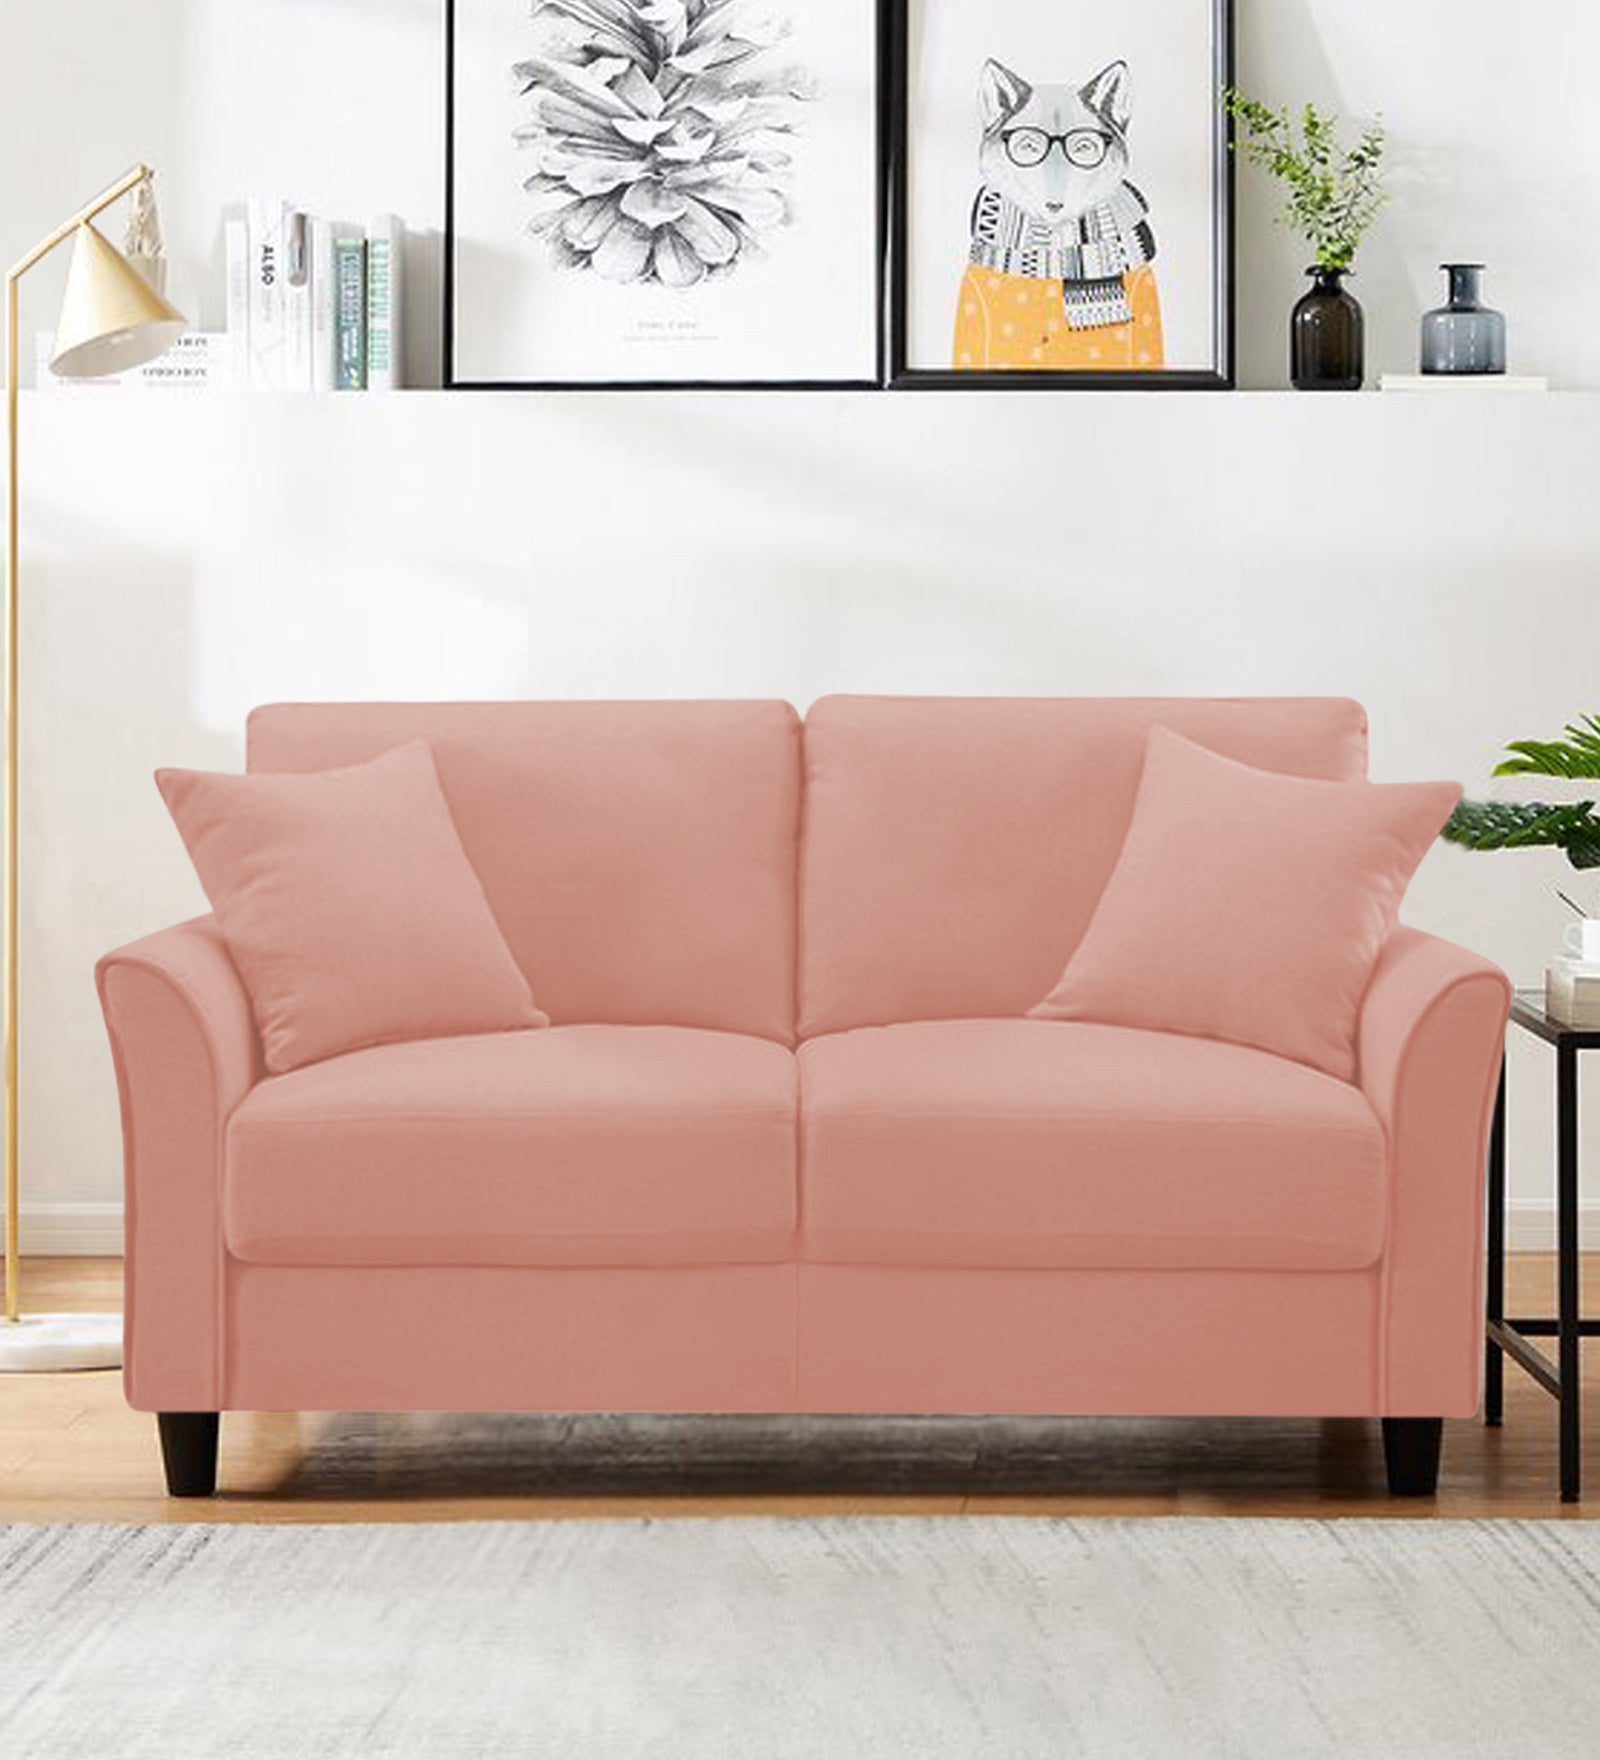 Daroo Velvet 2 Seater Sofa In Blush Pink Colour